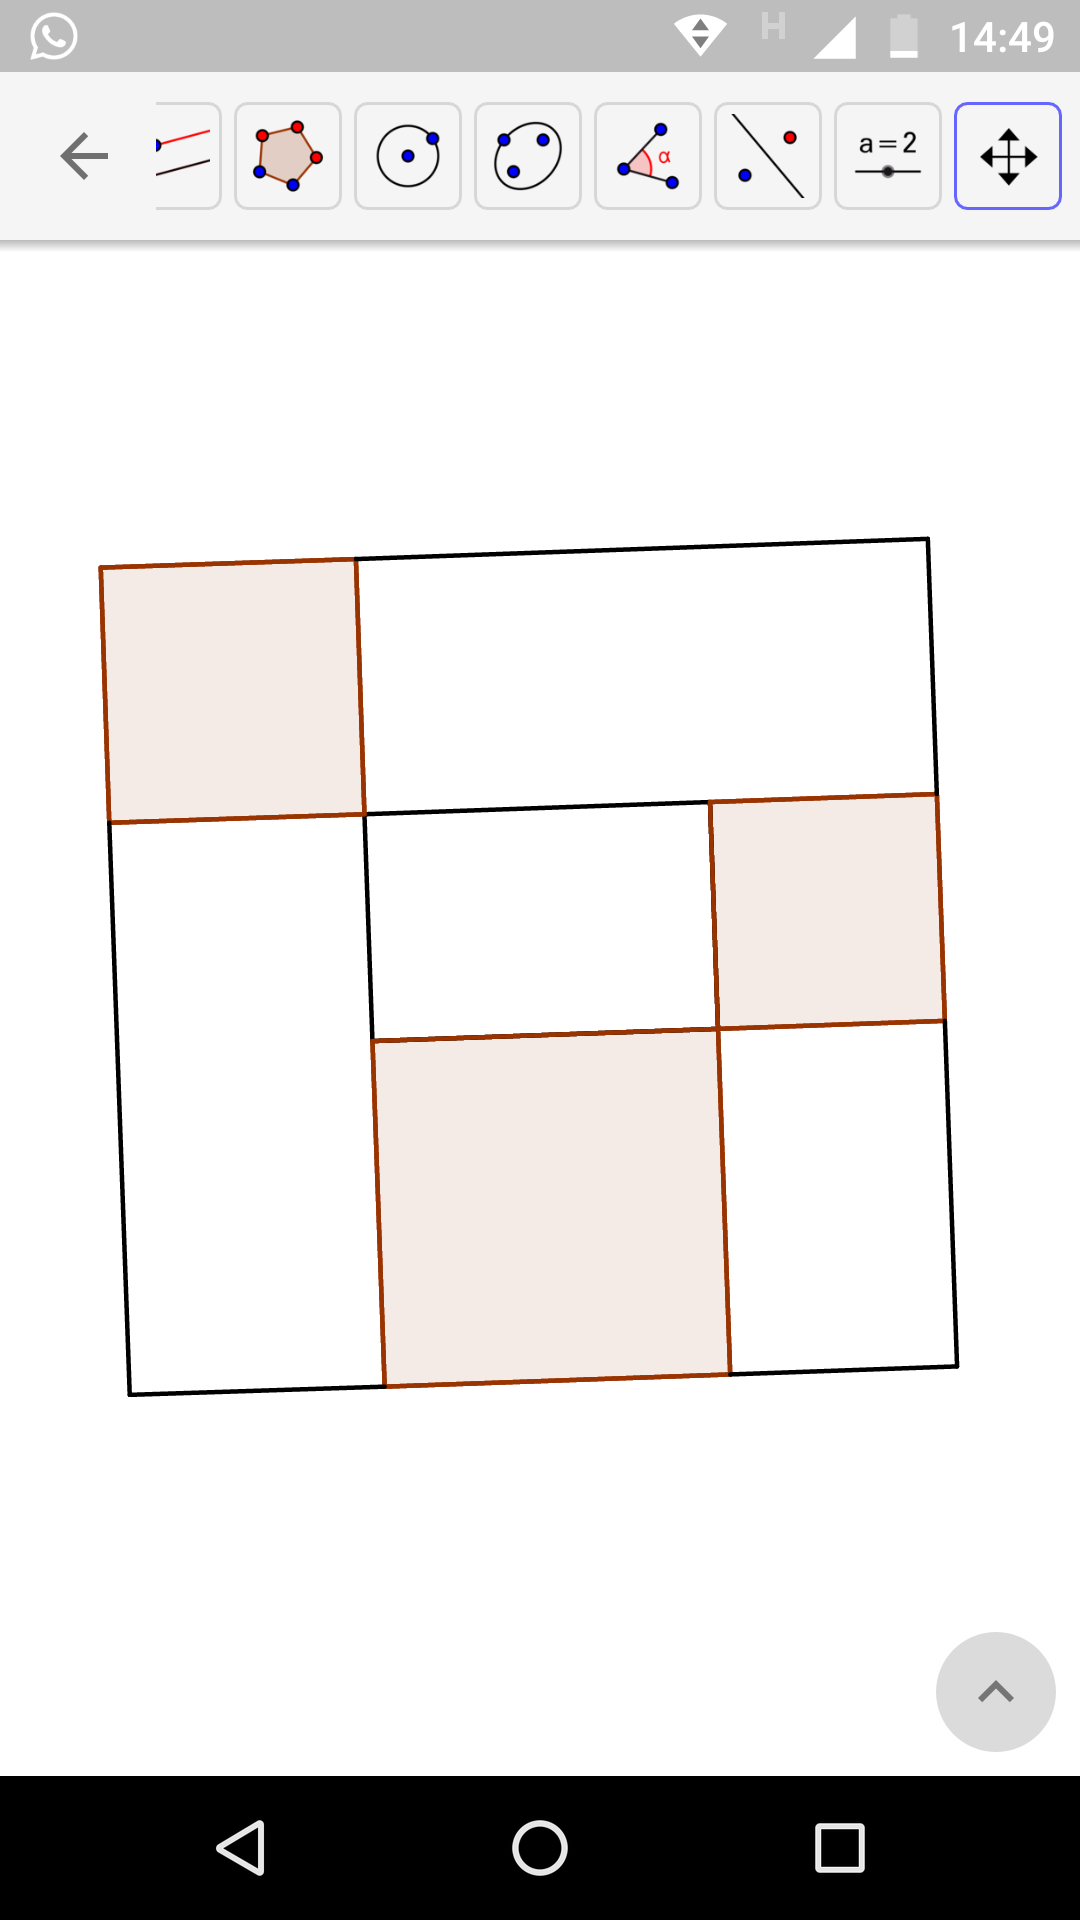 Ladrilhamento com quadrados e retângulos